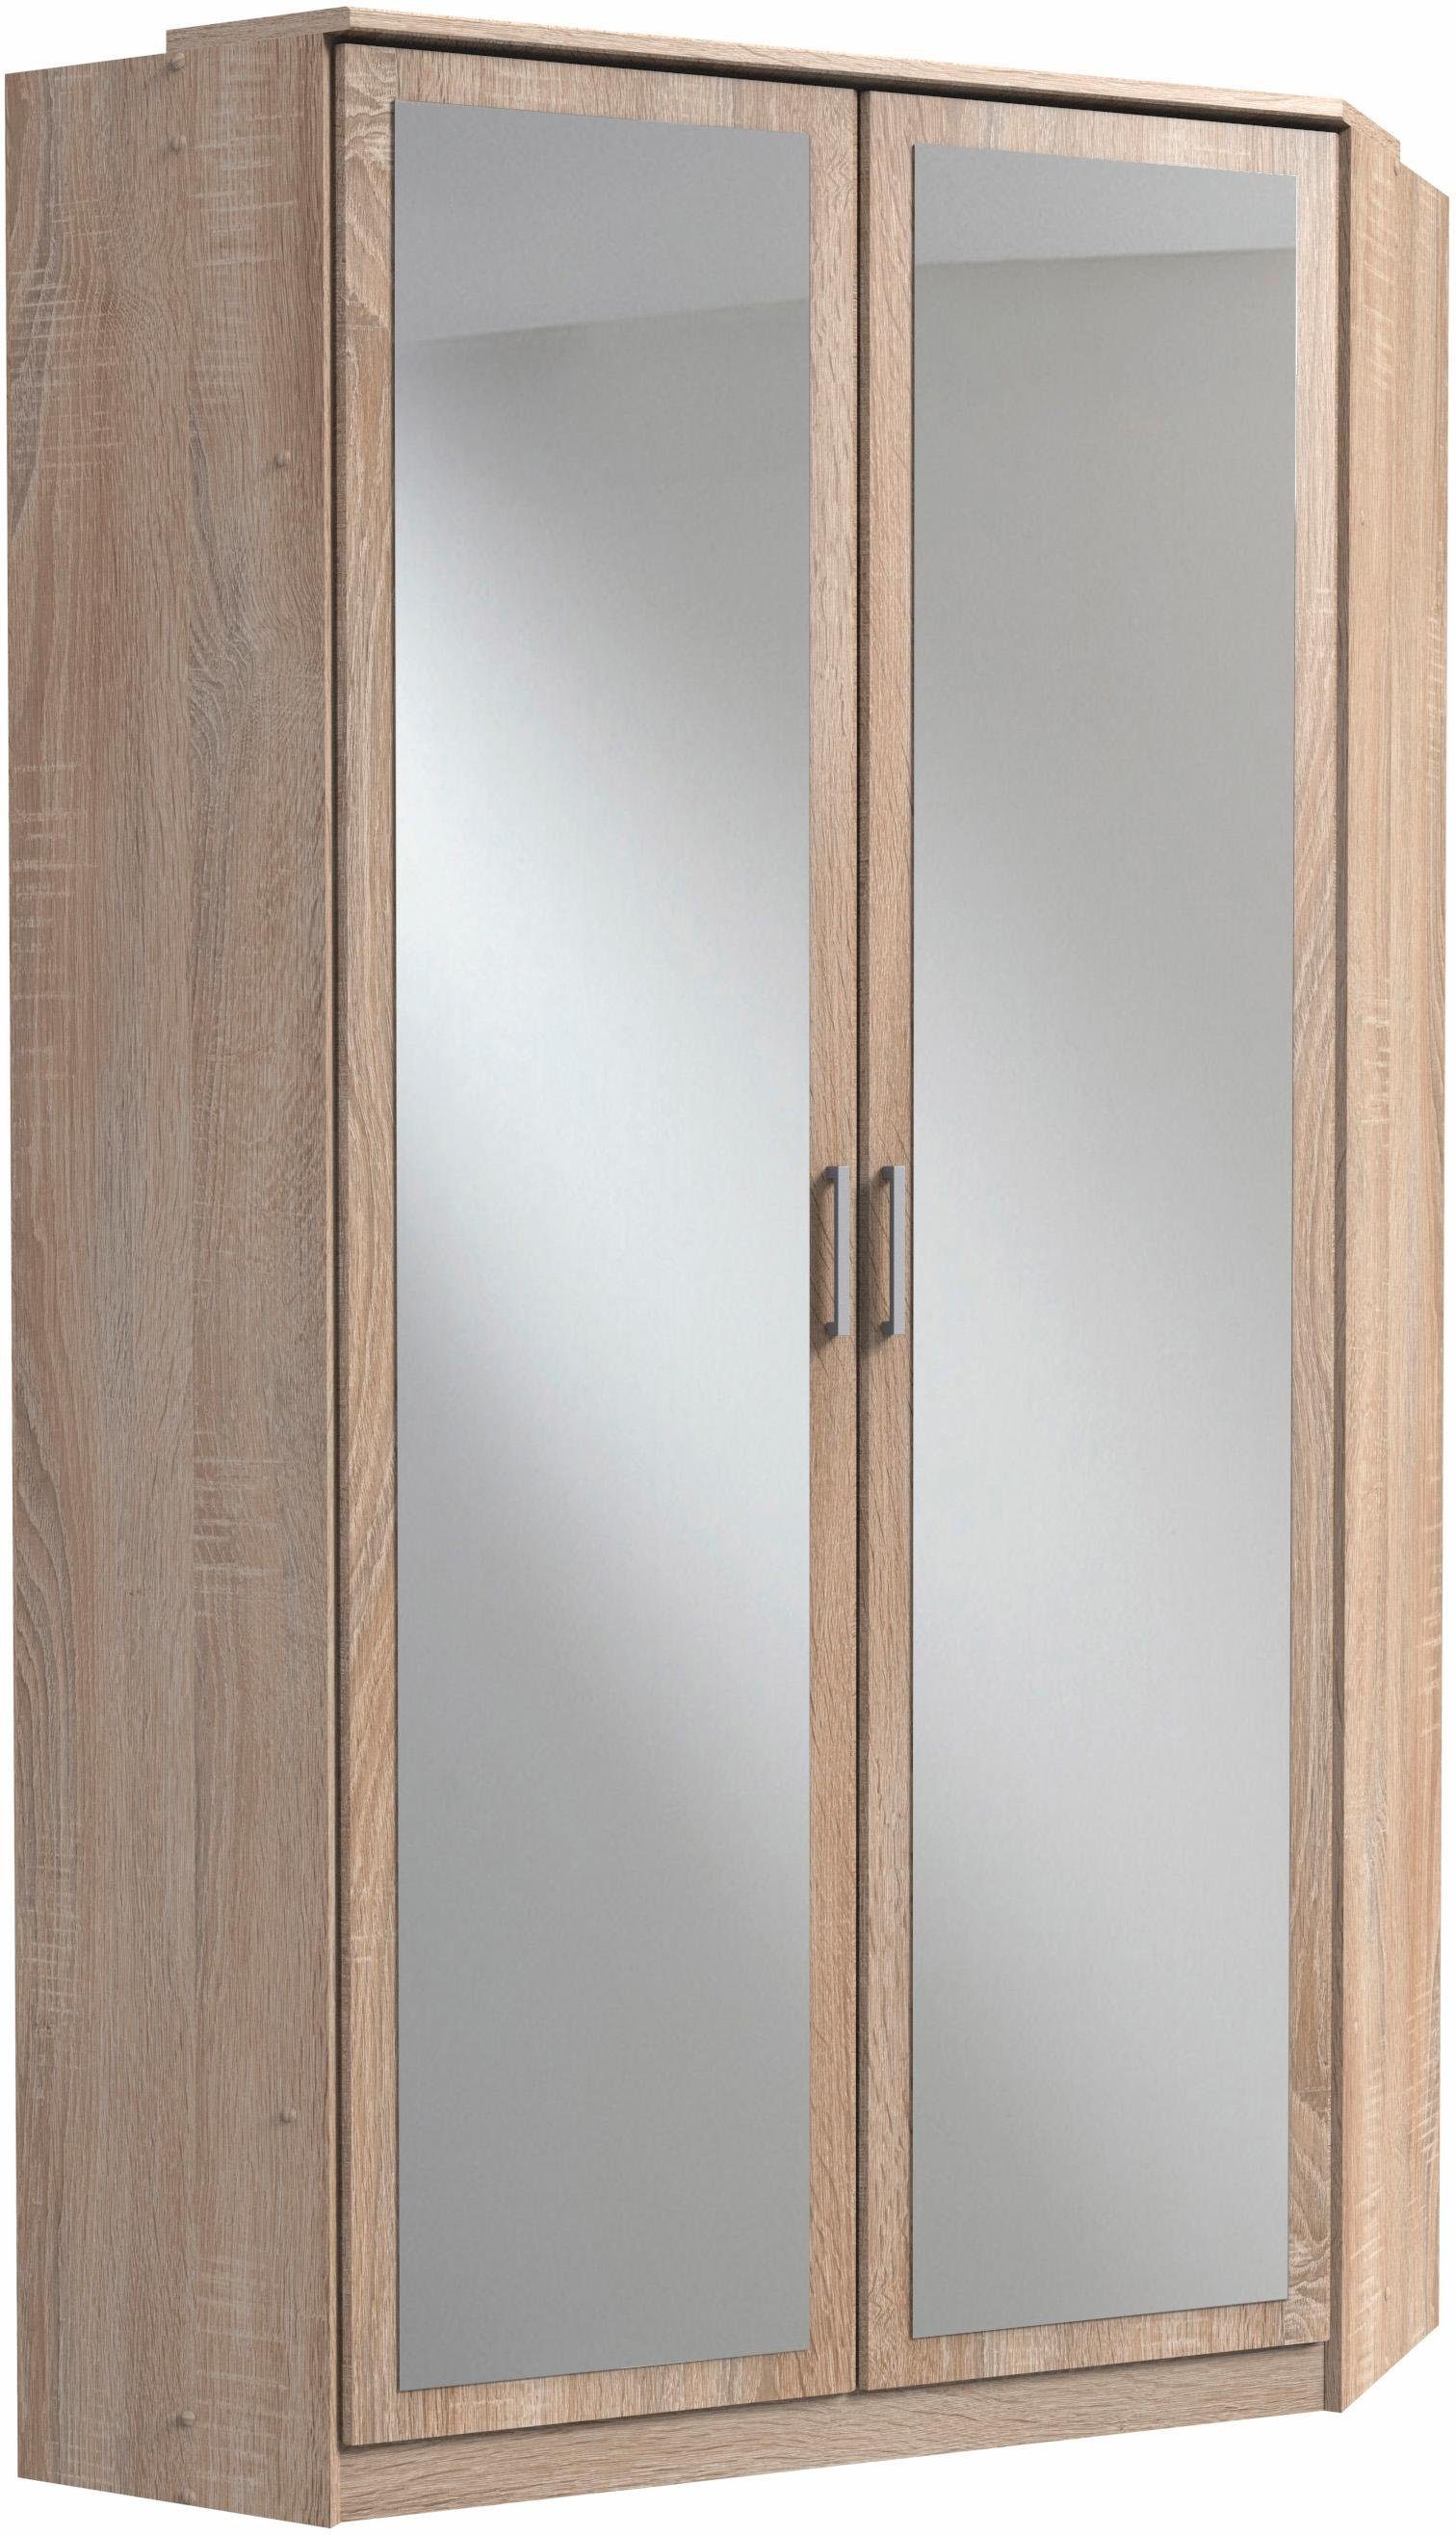 wimex hoekkledingkast click met 2 spiegeldeuren beige